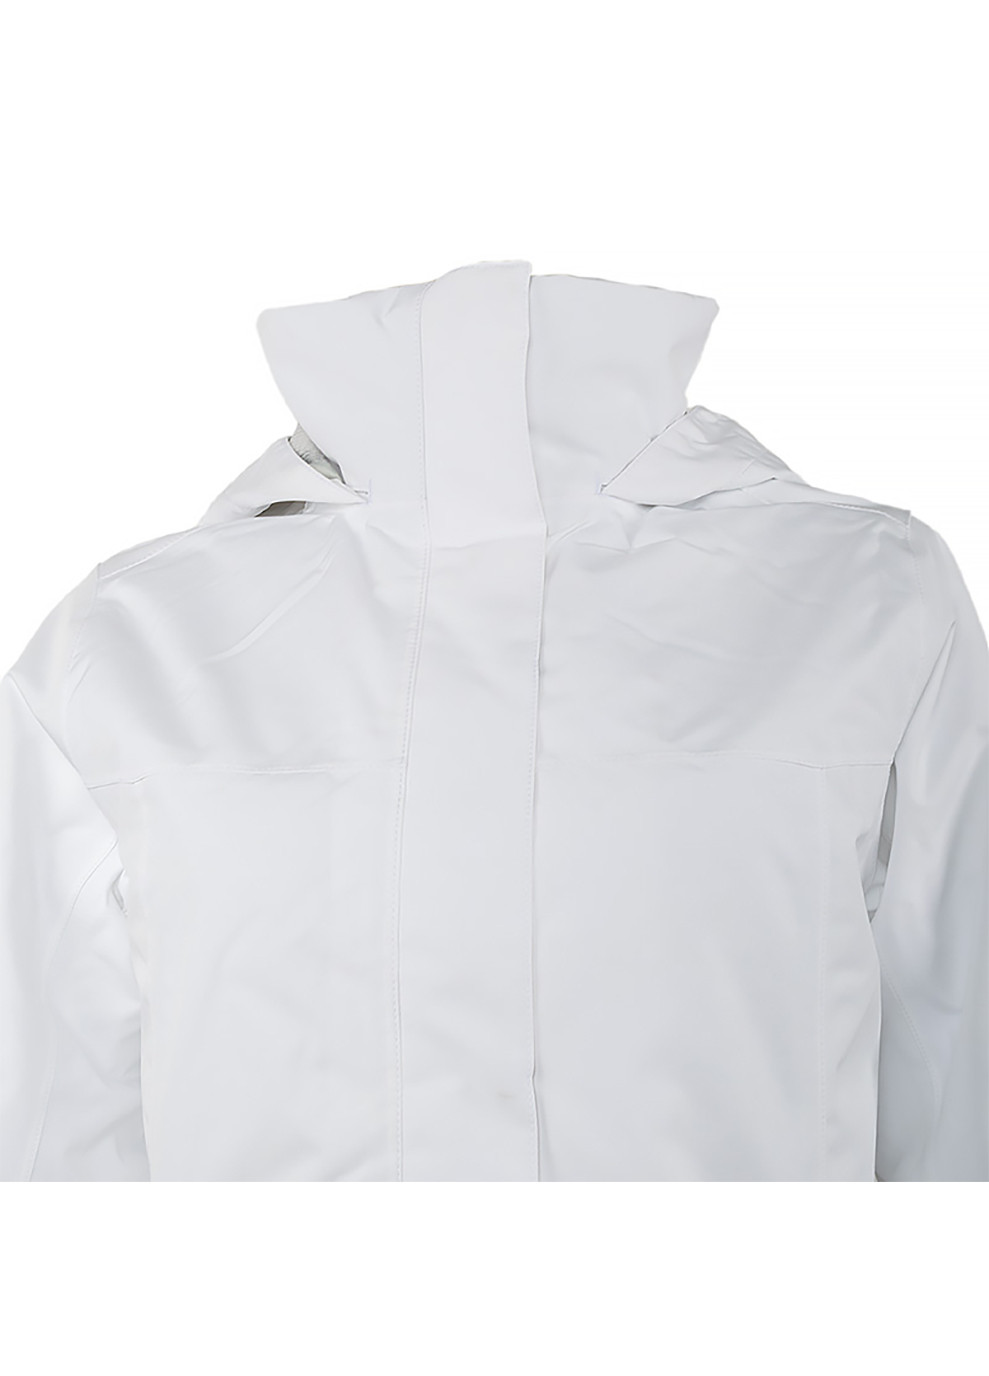 Белая демисезонная женская куртка w aden insulated coat белый Helly Hansen